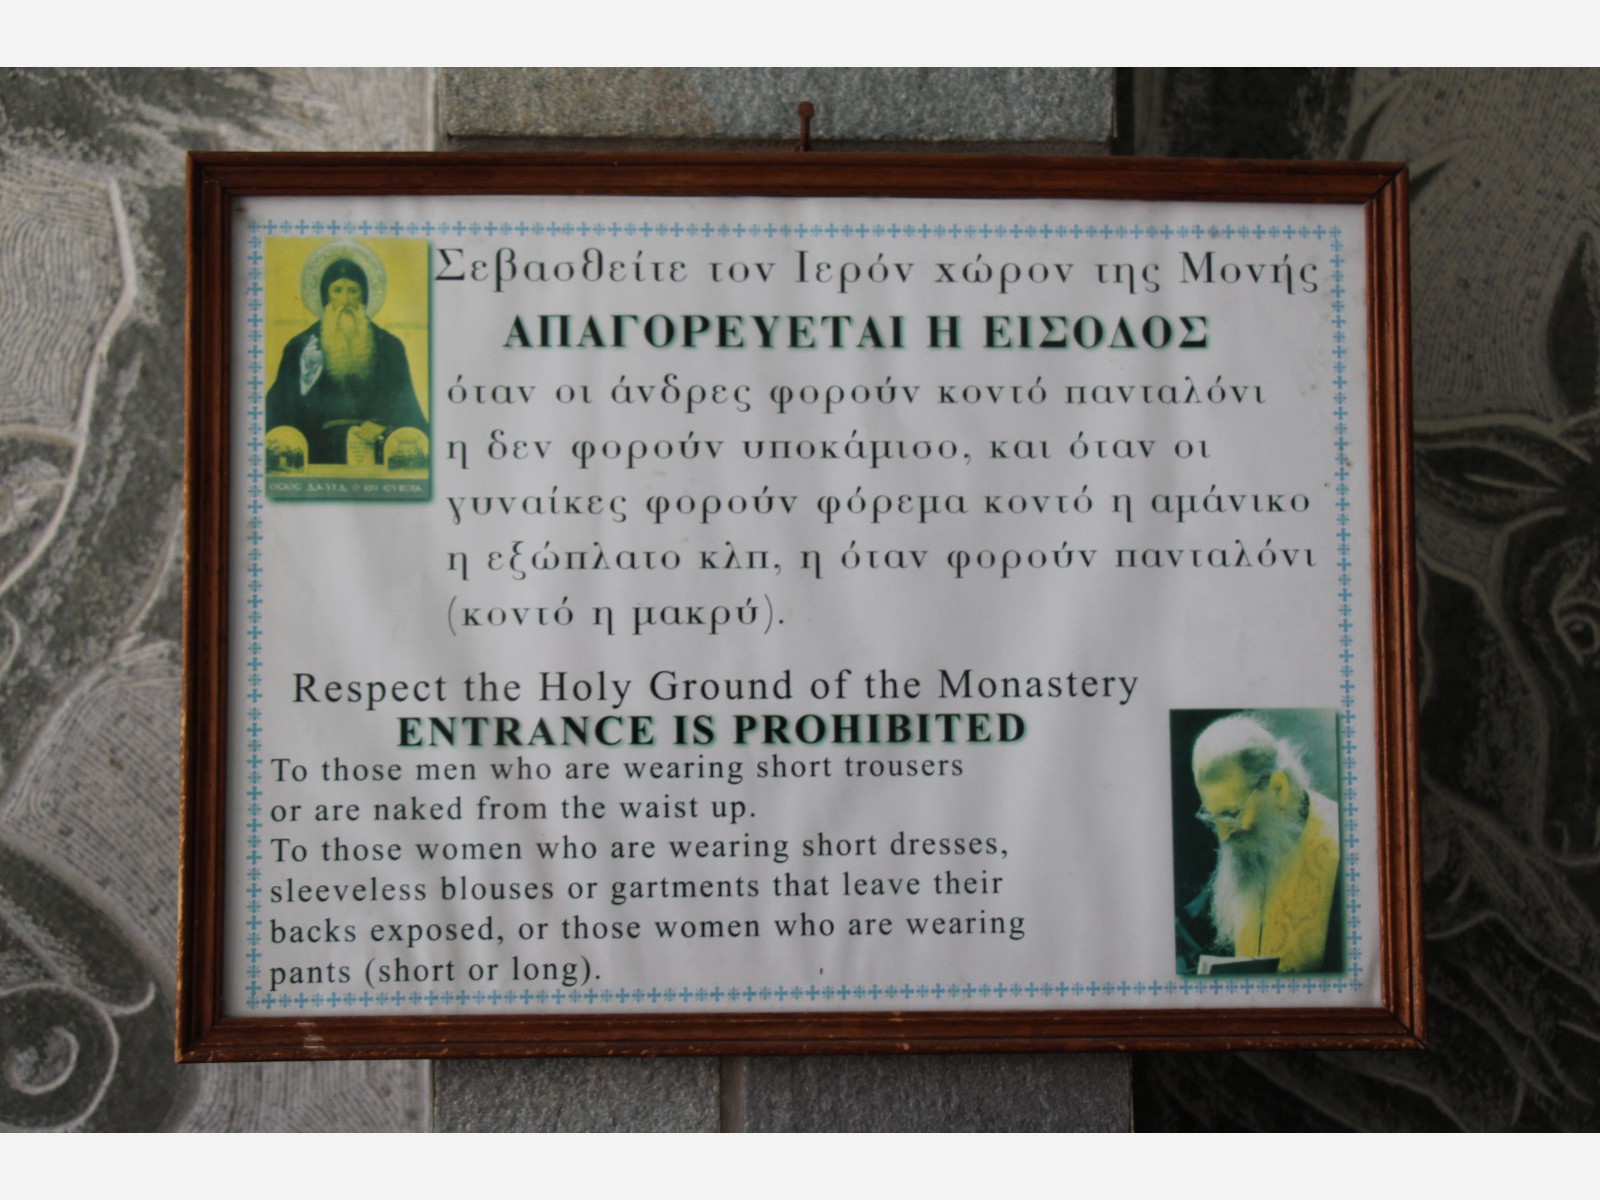 Vorschriften im Kloster